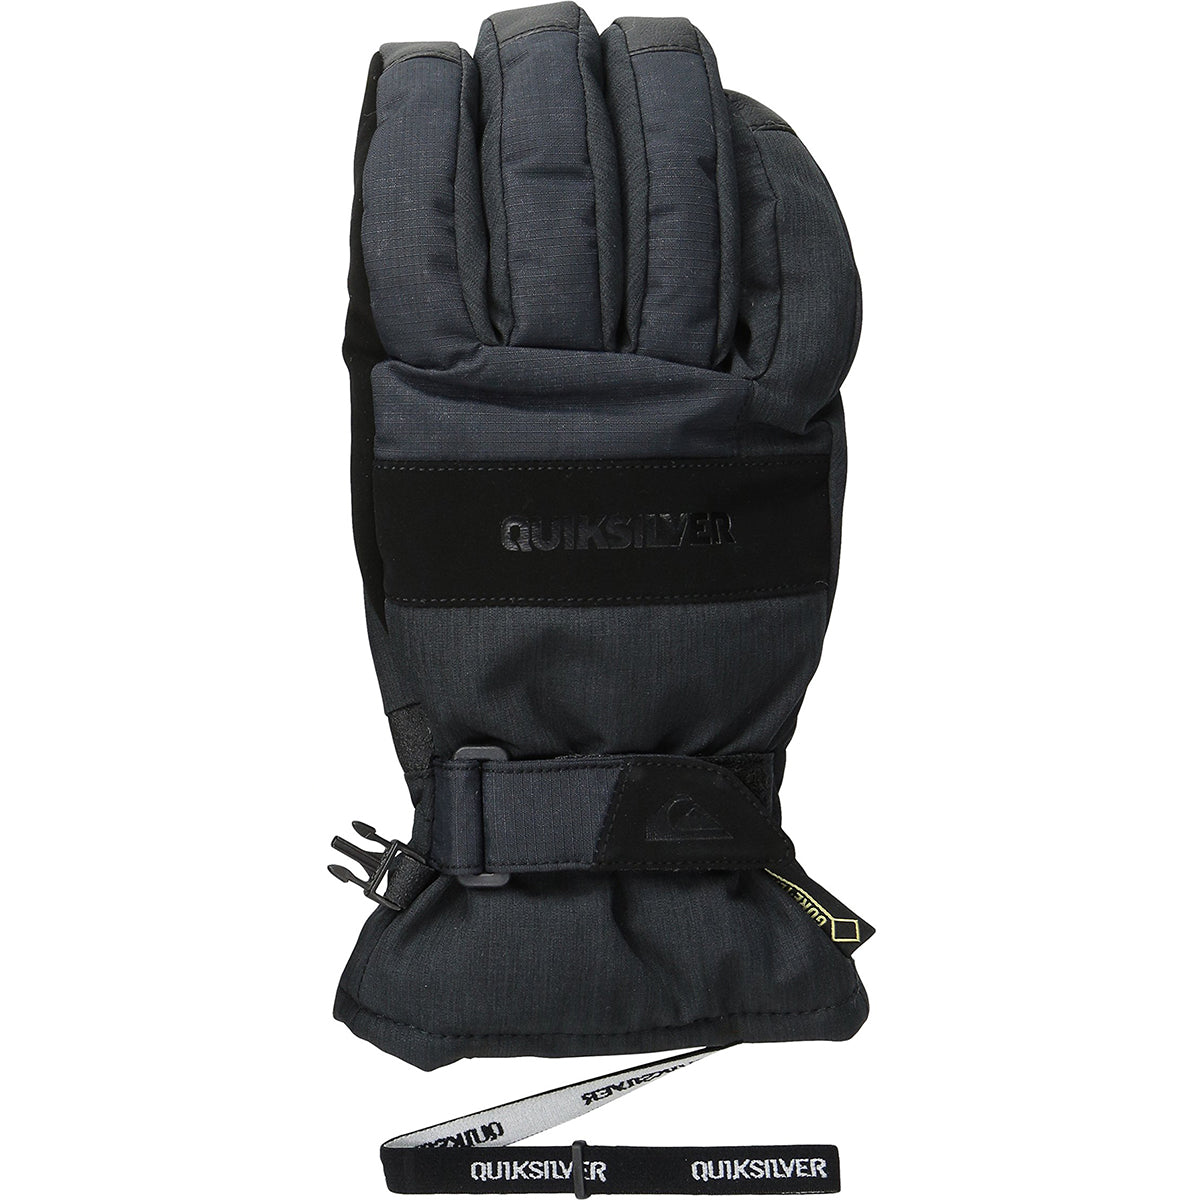 Quiksilver Hill Men's Snow Gloves - Black